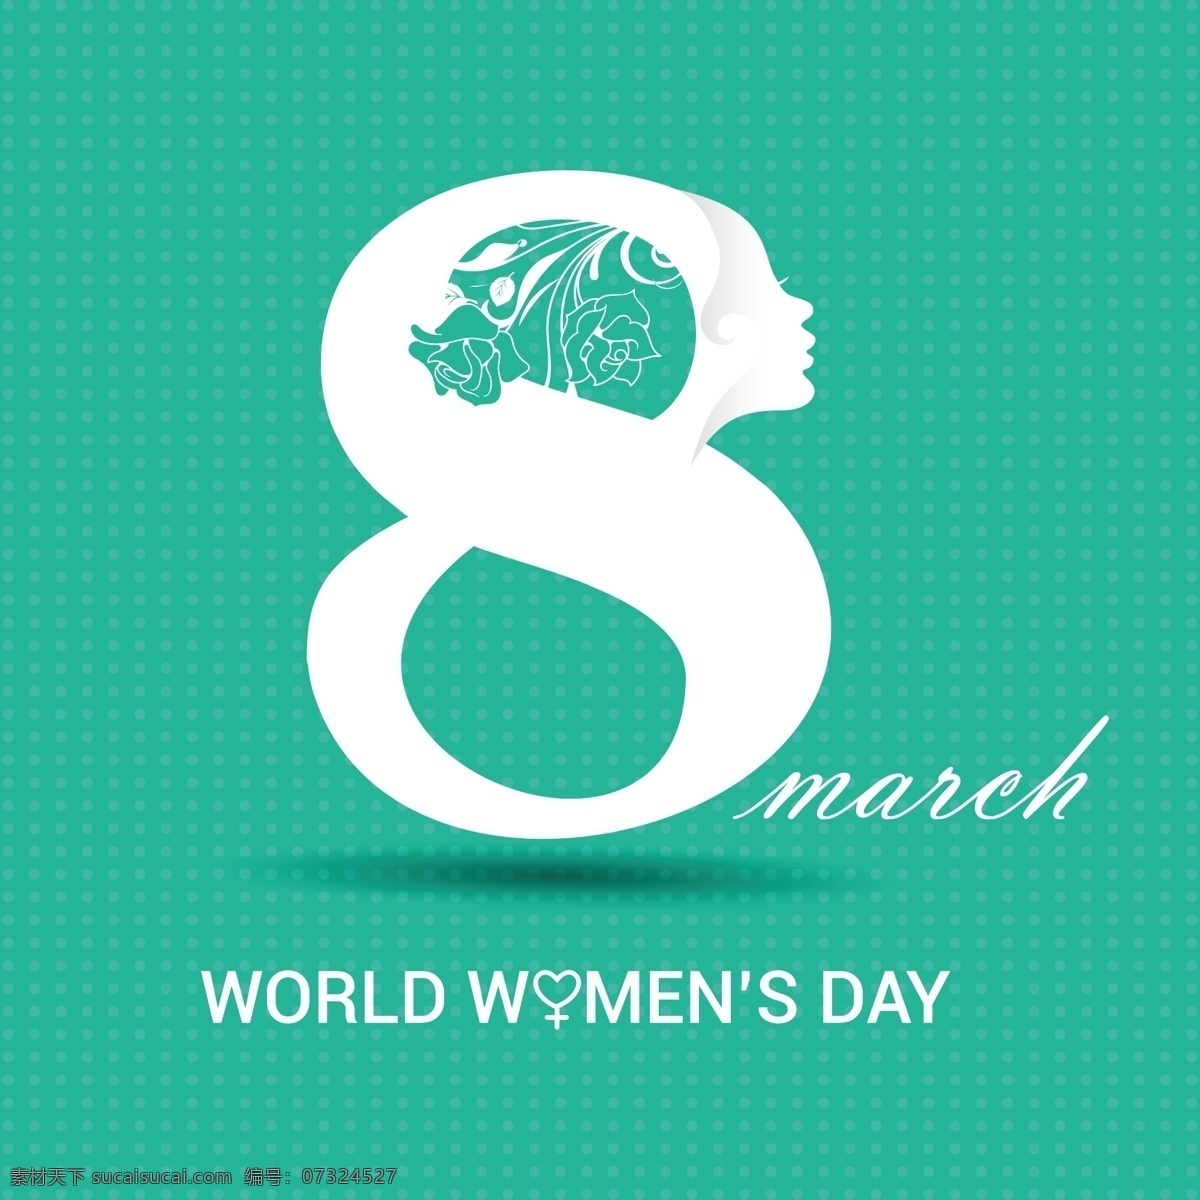 国际妇女节 绿松石背景 白色8 背景 庆祝 假日 女士 女性 自由 国际 游行 妇女 平等